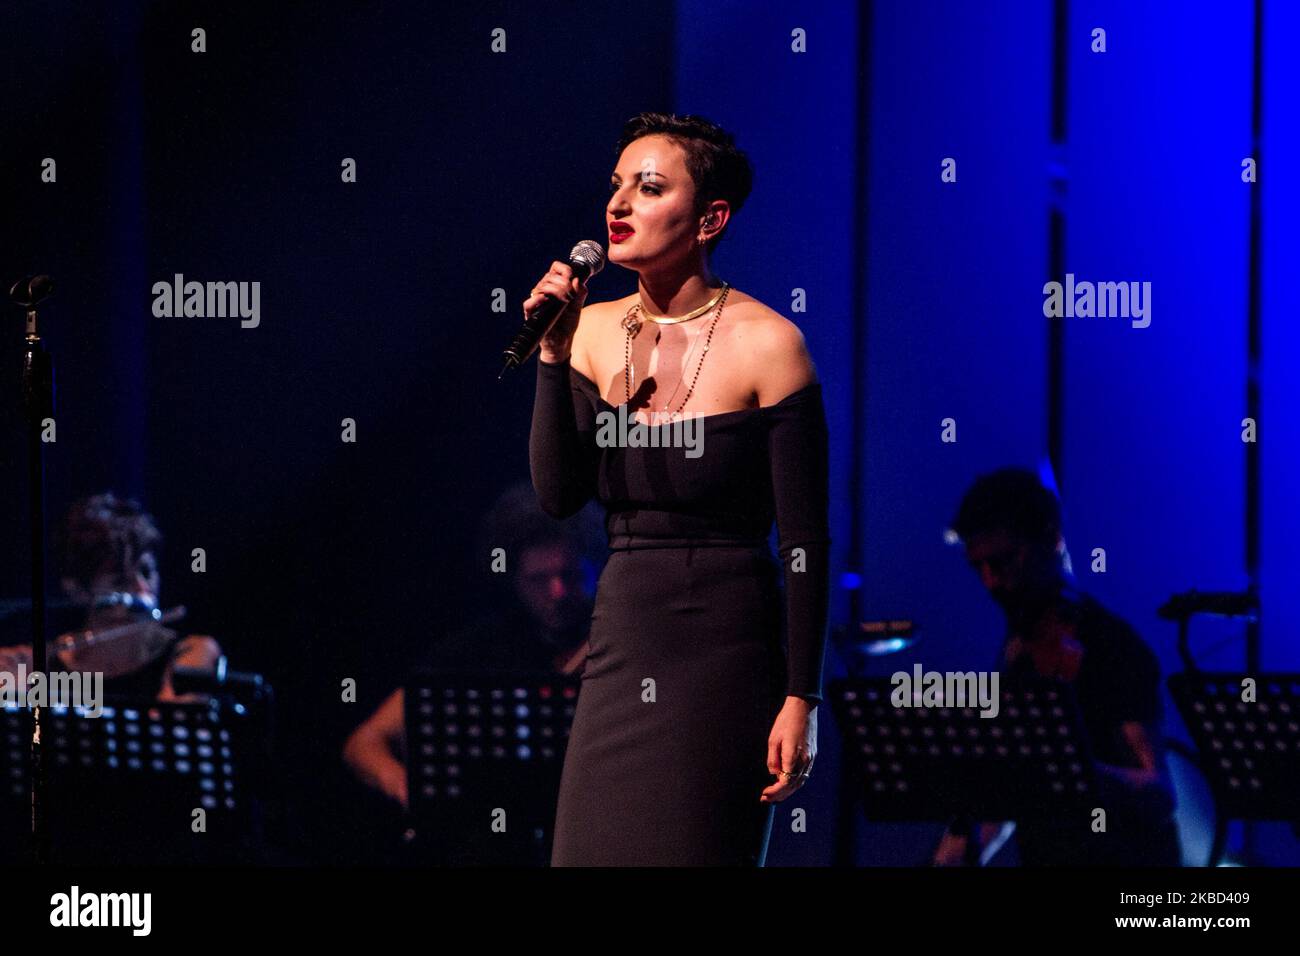 Arisa, de nombre real Rosalba Pippa, actúa en vivo en el Teatro degli Ardimboldi en Milán, Italia, el 16 2014 de abril. Arisa llegó a la fama tras su participación en el Festival de Música de San Remo 2009. Se colocó primero en la sección de recién llegados y ganó el Premio de Críticos Mia Martini con su entrada, 'Sincerità'. A principios de 2009, lanzó su primer álbum, también titulado Sincerità. En enero de 2010 lanzó su segundo álbum, Malamorenò. A finales de 2011 protagonizó como jueza en la quinta temporada de la versión italiana de The X Factor, transmitida por Sky Uno (Foto de Mairo Cinquetti/NurPhoto) Foto de stock